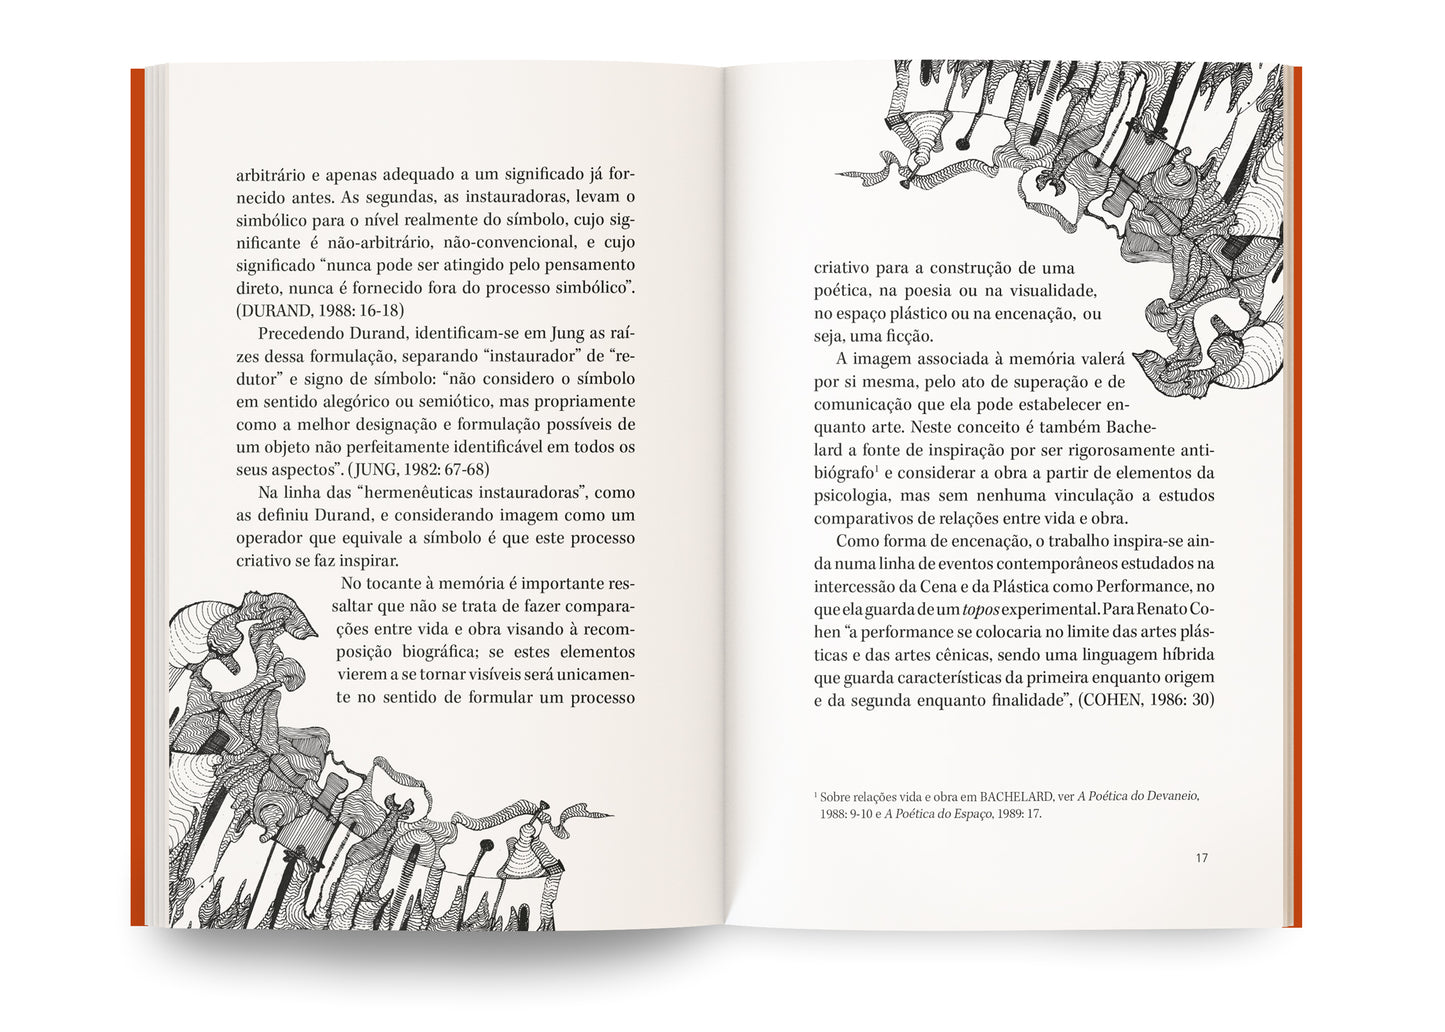 Livro Trajeto Criativo - Bachelard como uma das fontes de inspiração